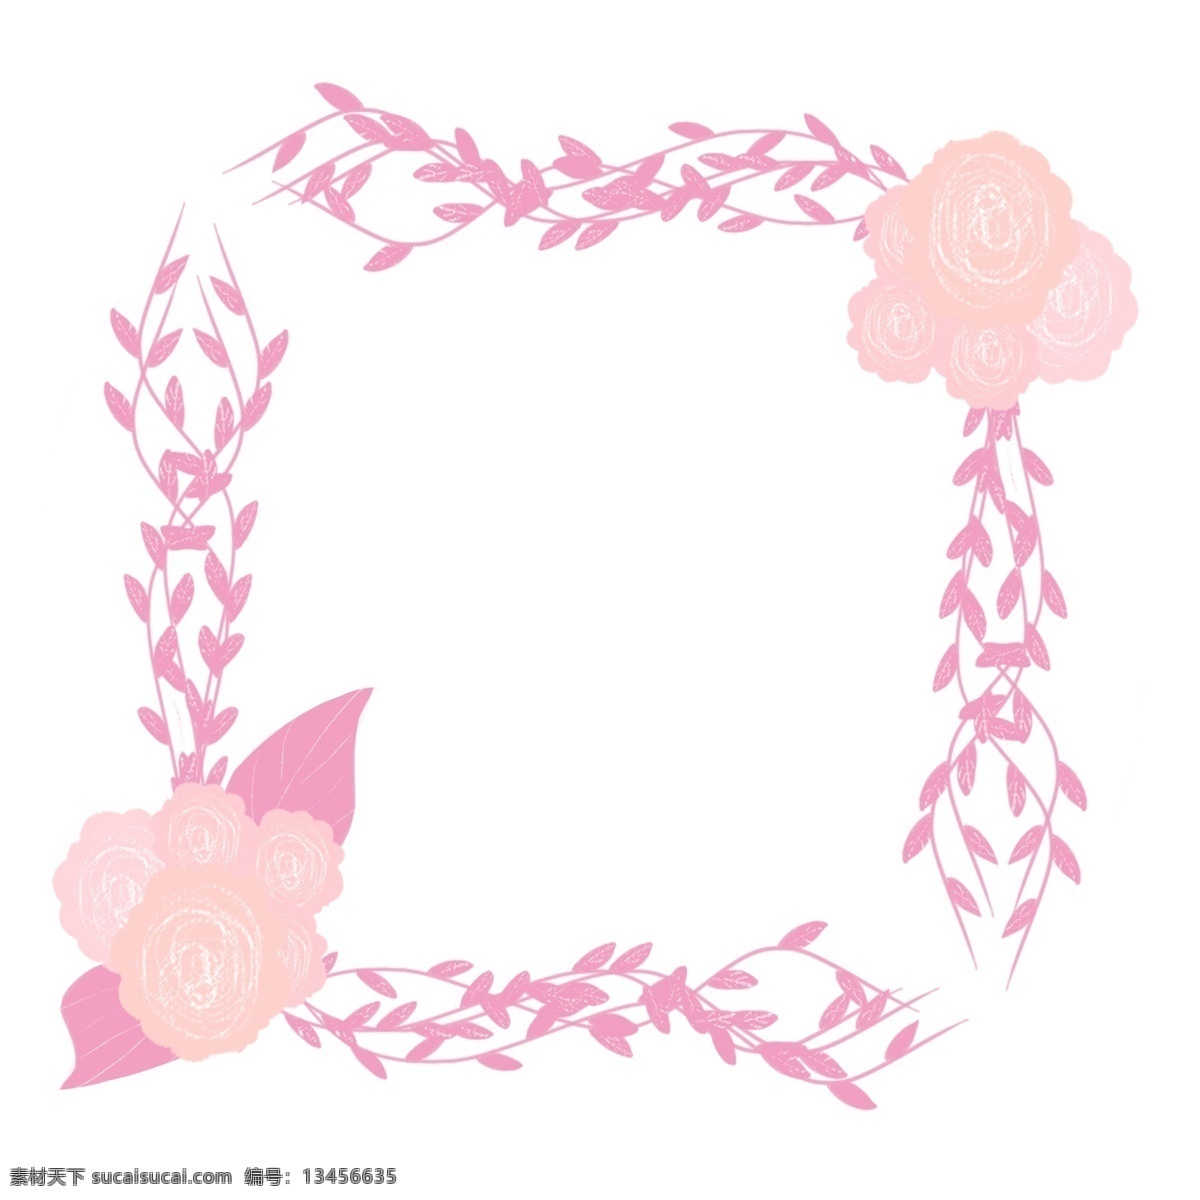 婚礼 边框 装饰 插画 小花边框 粉色的边框 粉色的小花 粉色的叶子 植物边框 漂亮的边框 创意边框